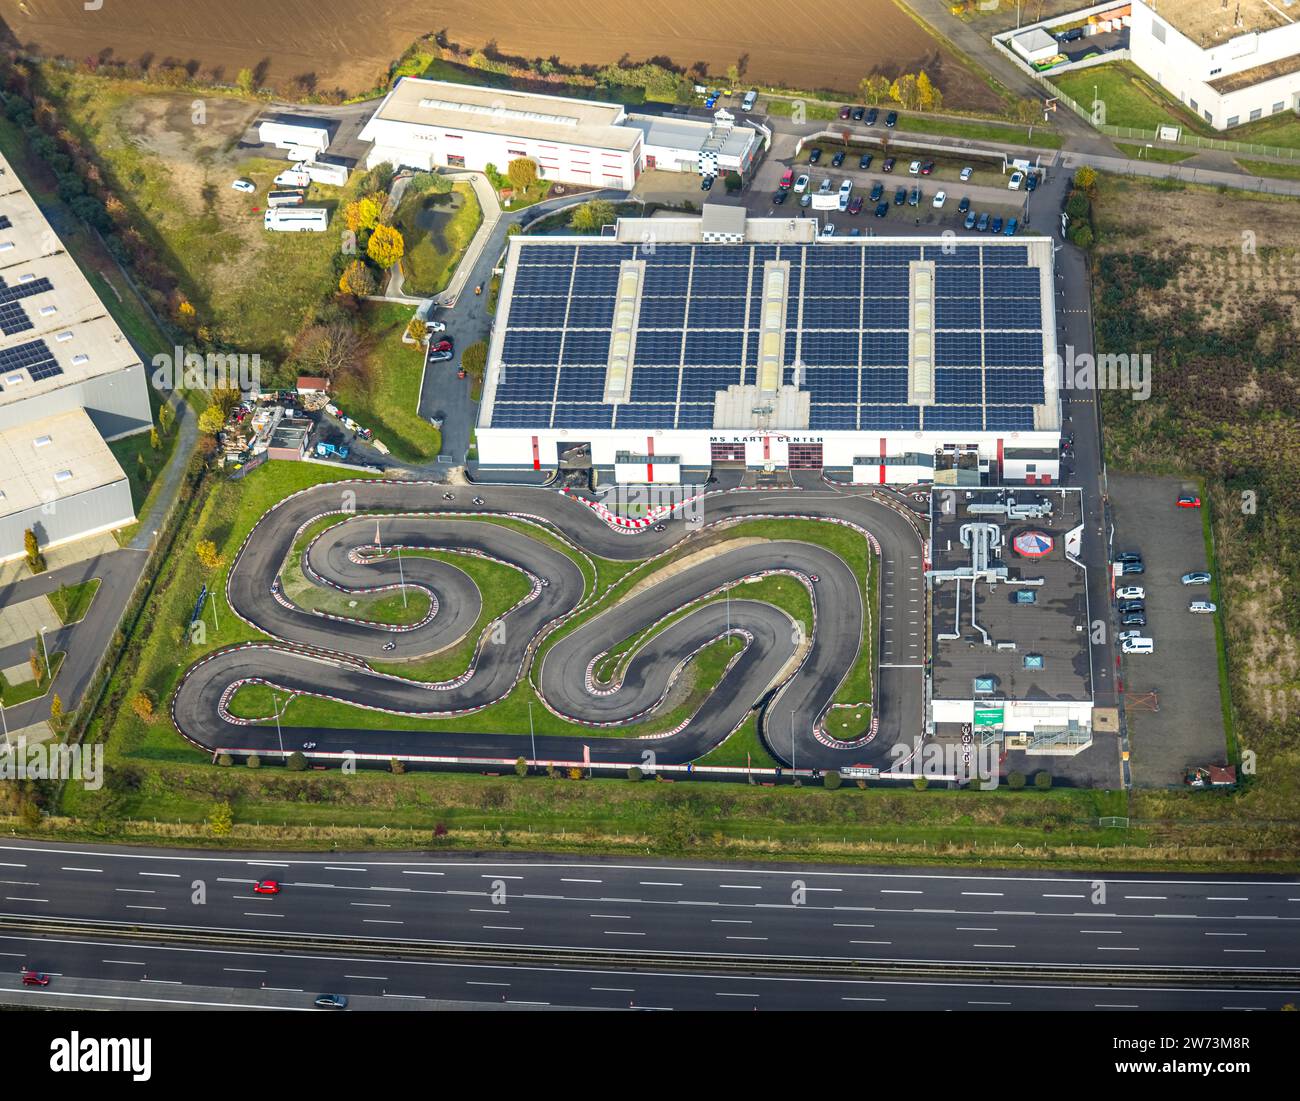 Vista aerea, pista per kart e centro eventi Michael Schumacher, MS Cart Center, pista per go-kart al coperto e all'aperto e go-kart in movimento, sala con sala solare Foto Stock